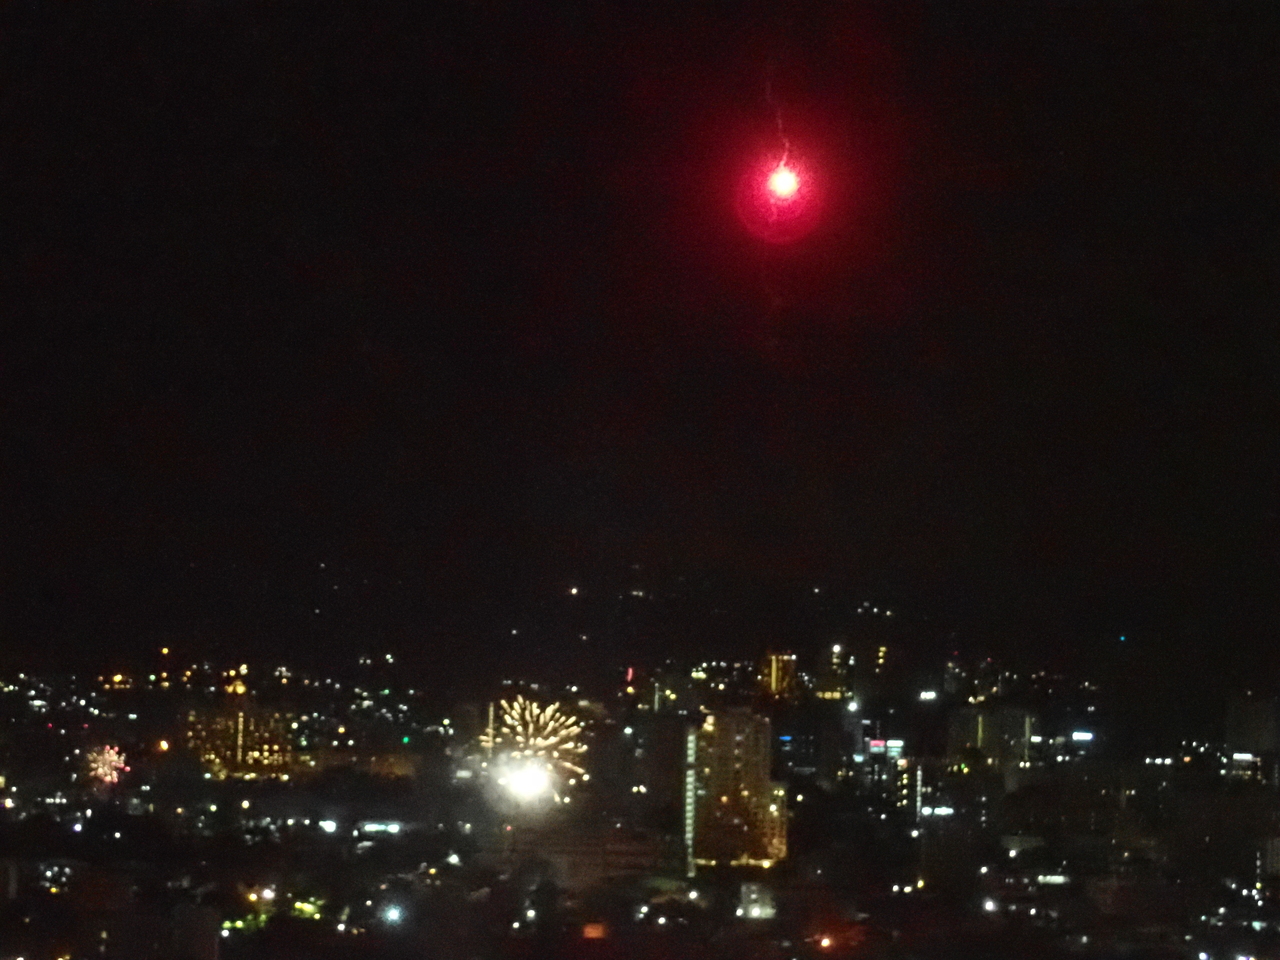 12 24セブ旅行中の方に告ぐ 12 25 0時 空を見てください 赤い火の玉が見られるハズです セブ島 フィリピン の旅行記 ブログ By クミさん フォートラベル